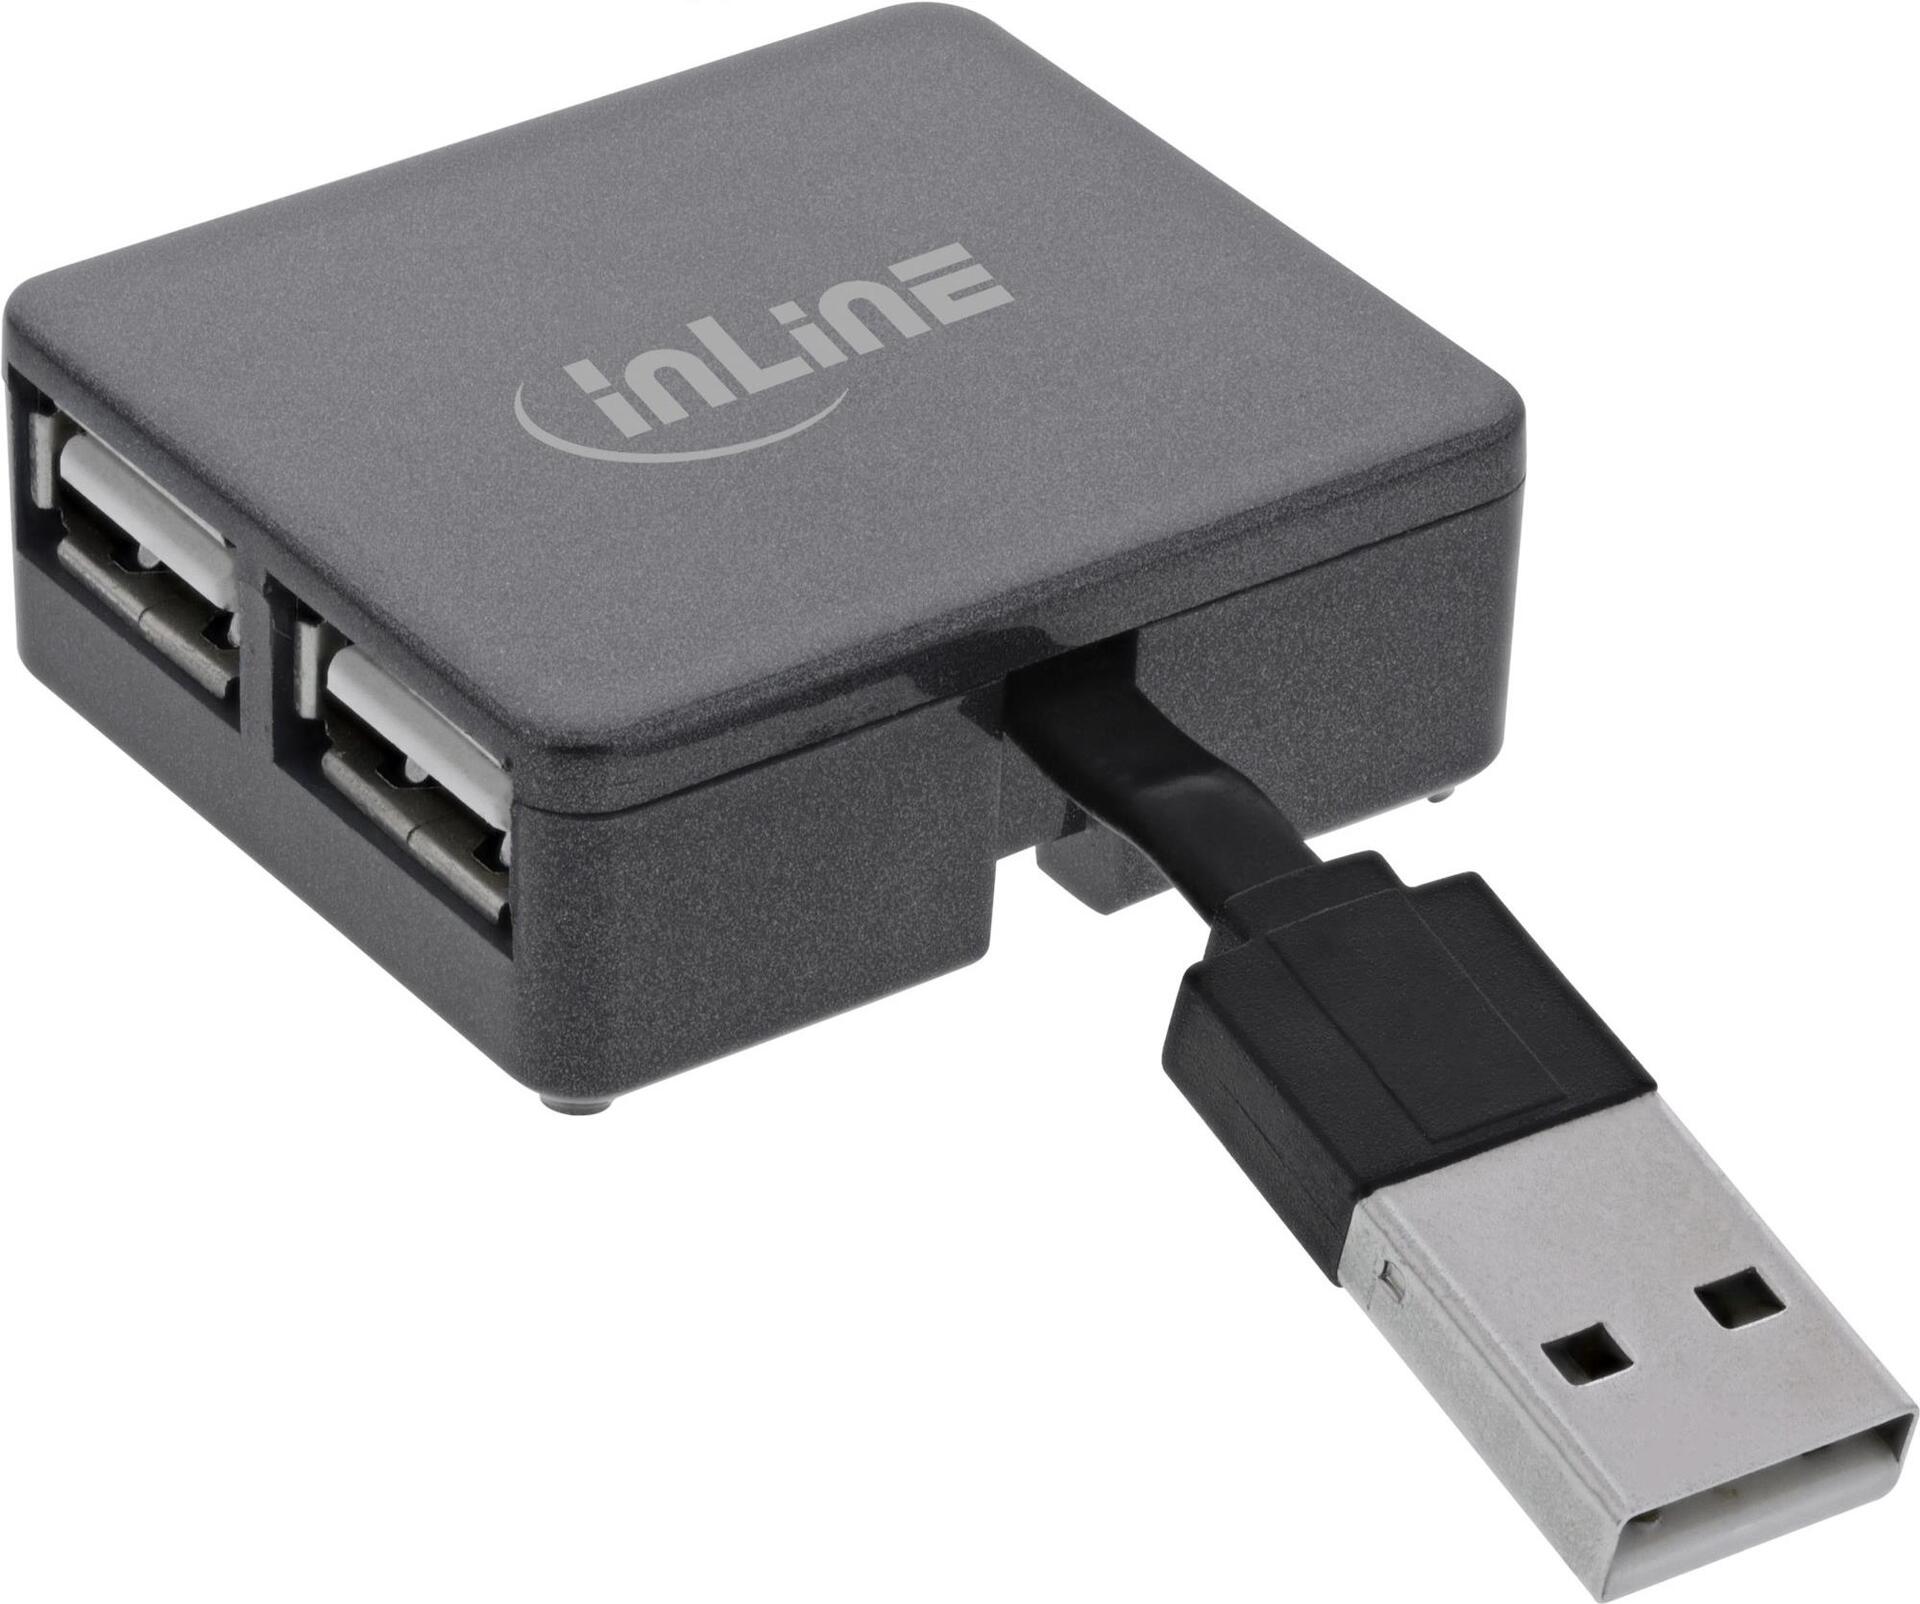 InLine USB 2.0 4-Port Hub (33293L)